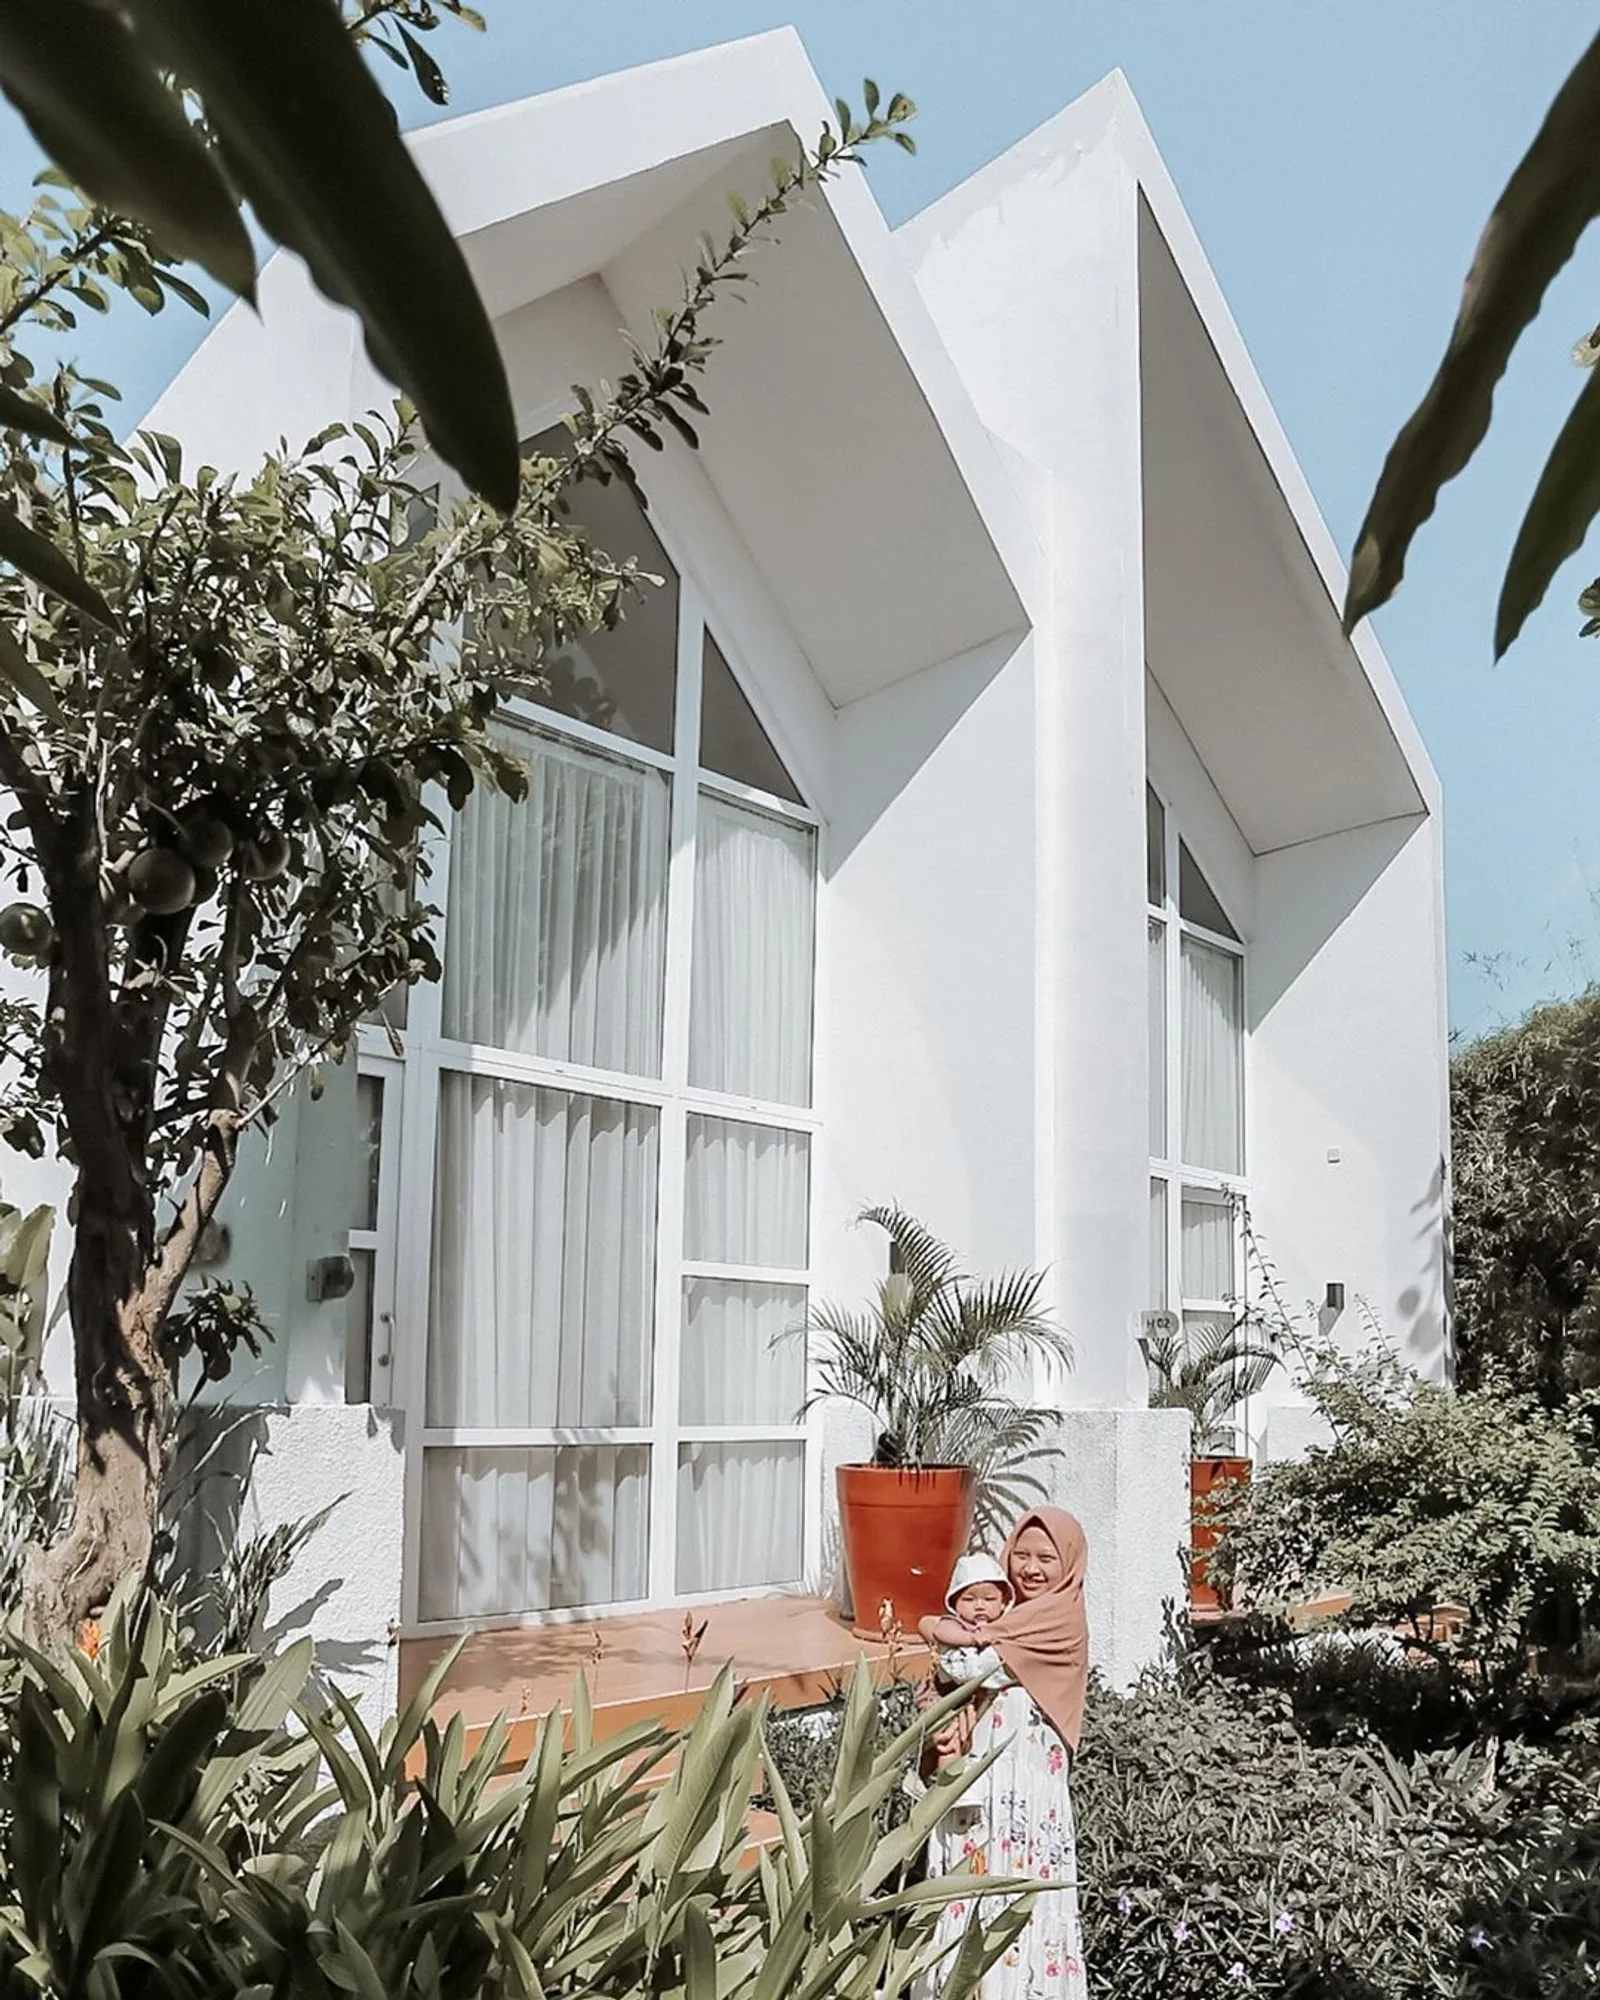 Hotel-Hotel dengan Desain Kamar Minimalis yang Instagrammable